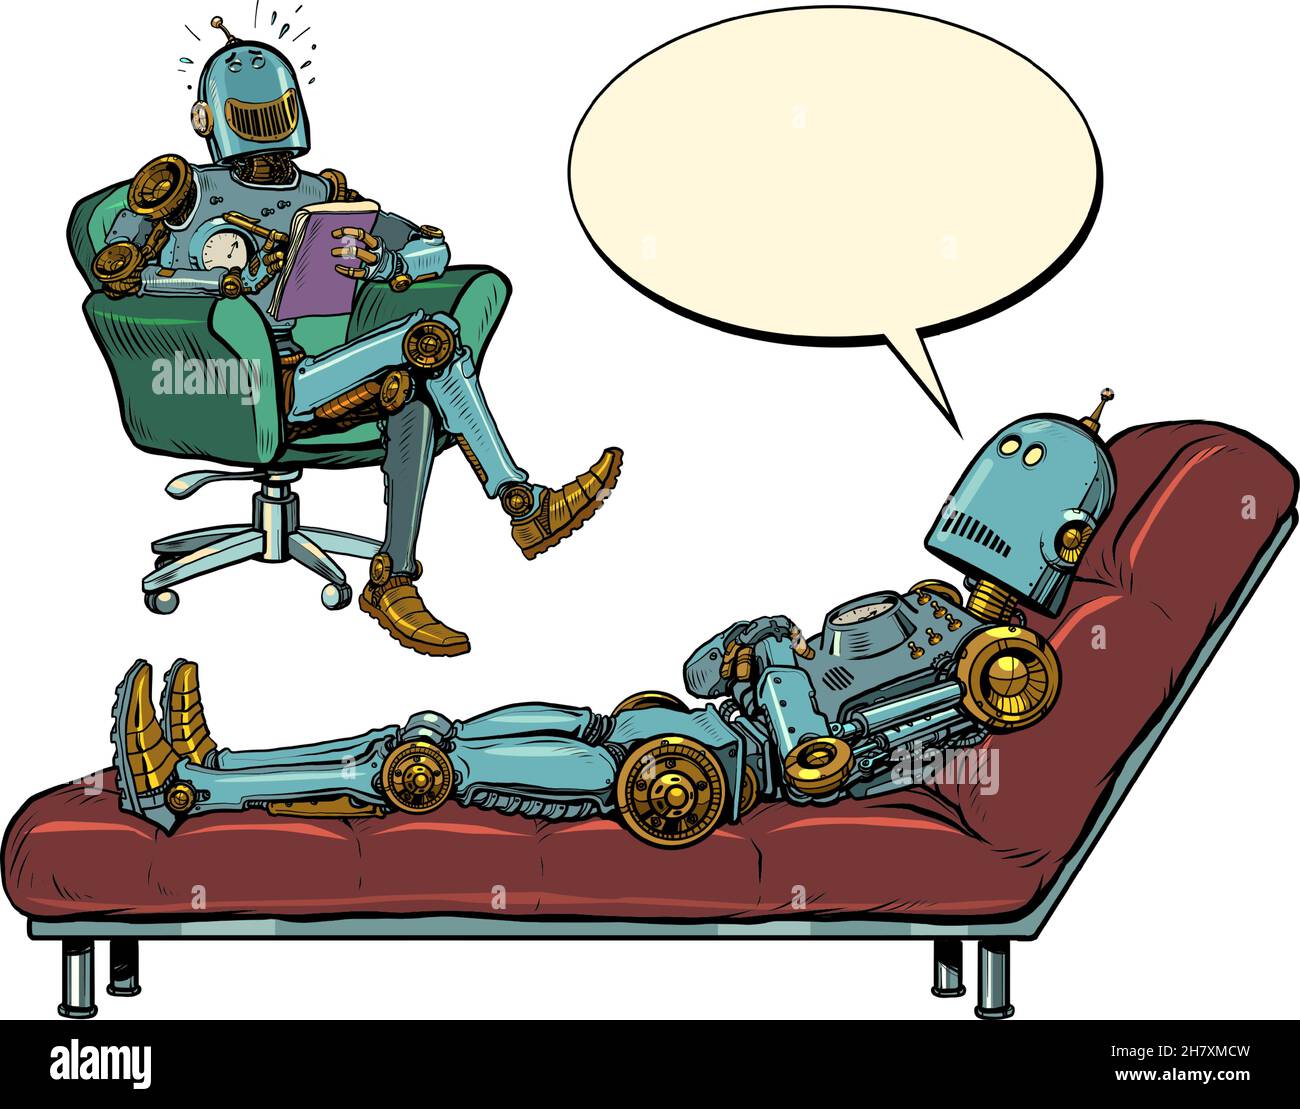 Ein Roboter-Psychotherapeut bei einer Psychotherapiesitzung mit einem Patienten, hört dem Roboter zu, lacht und notiert sich in einem Notizbuch Stock Vektor